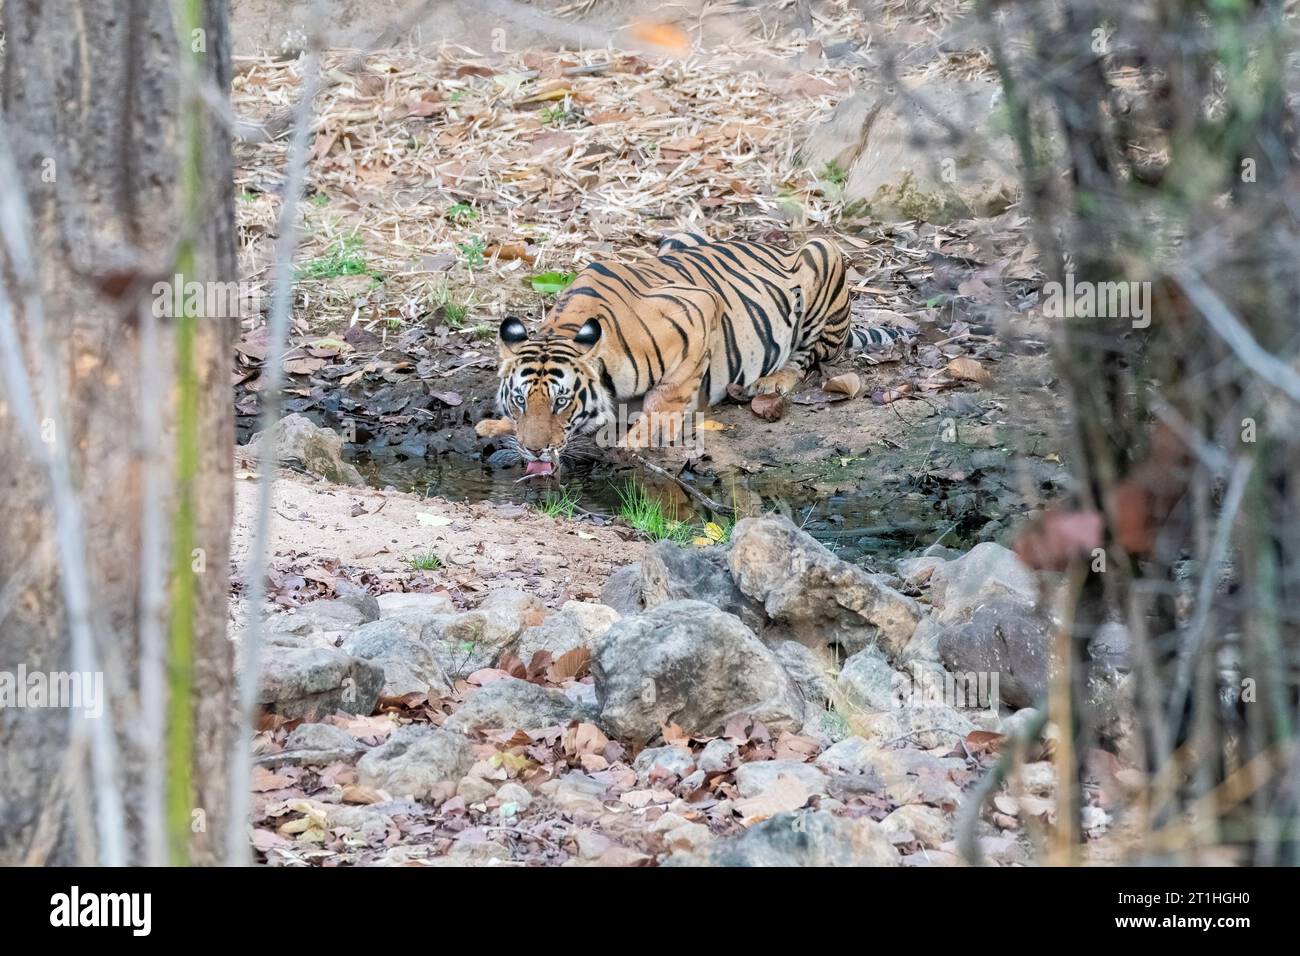 Un tigre subadulte buvant de l'eau d'un petit ruisseau à l'ombre de l'arbre par une chaude après-midi d'été à l'intérieur de Bandhavgarh Tiger Reserve pendant safar Banque D'Images